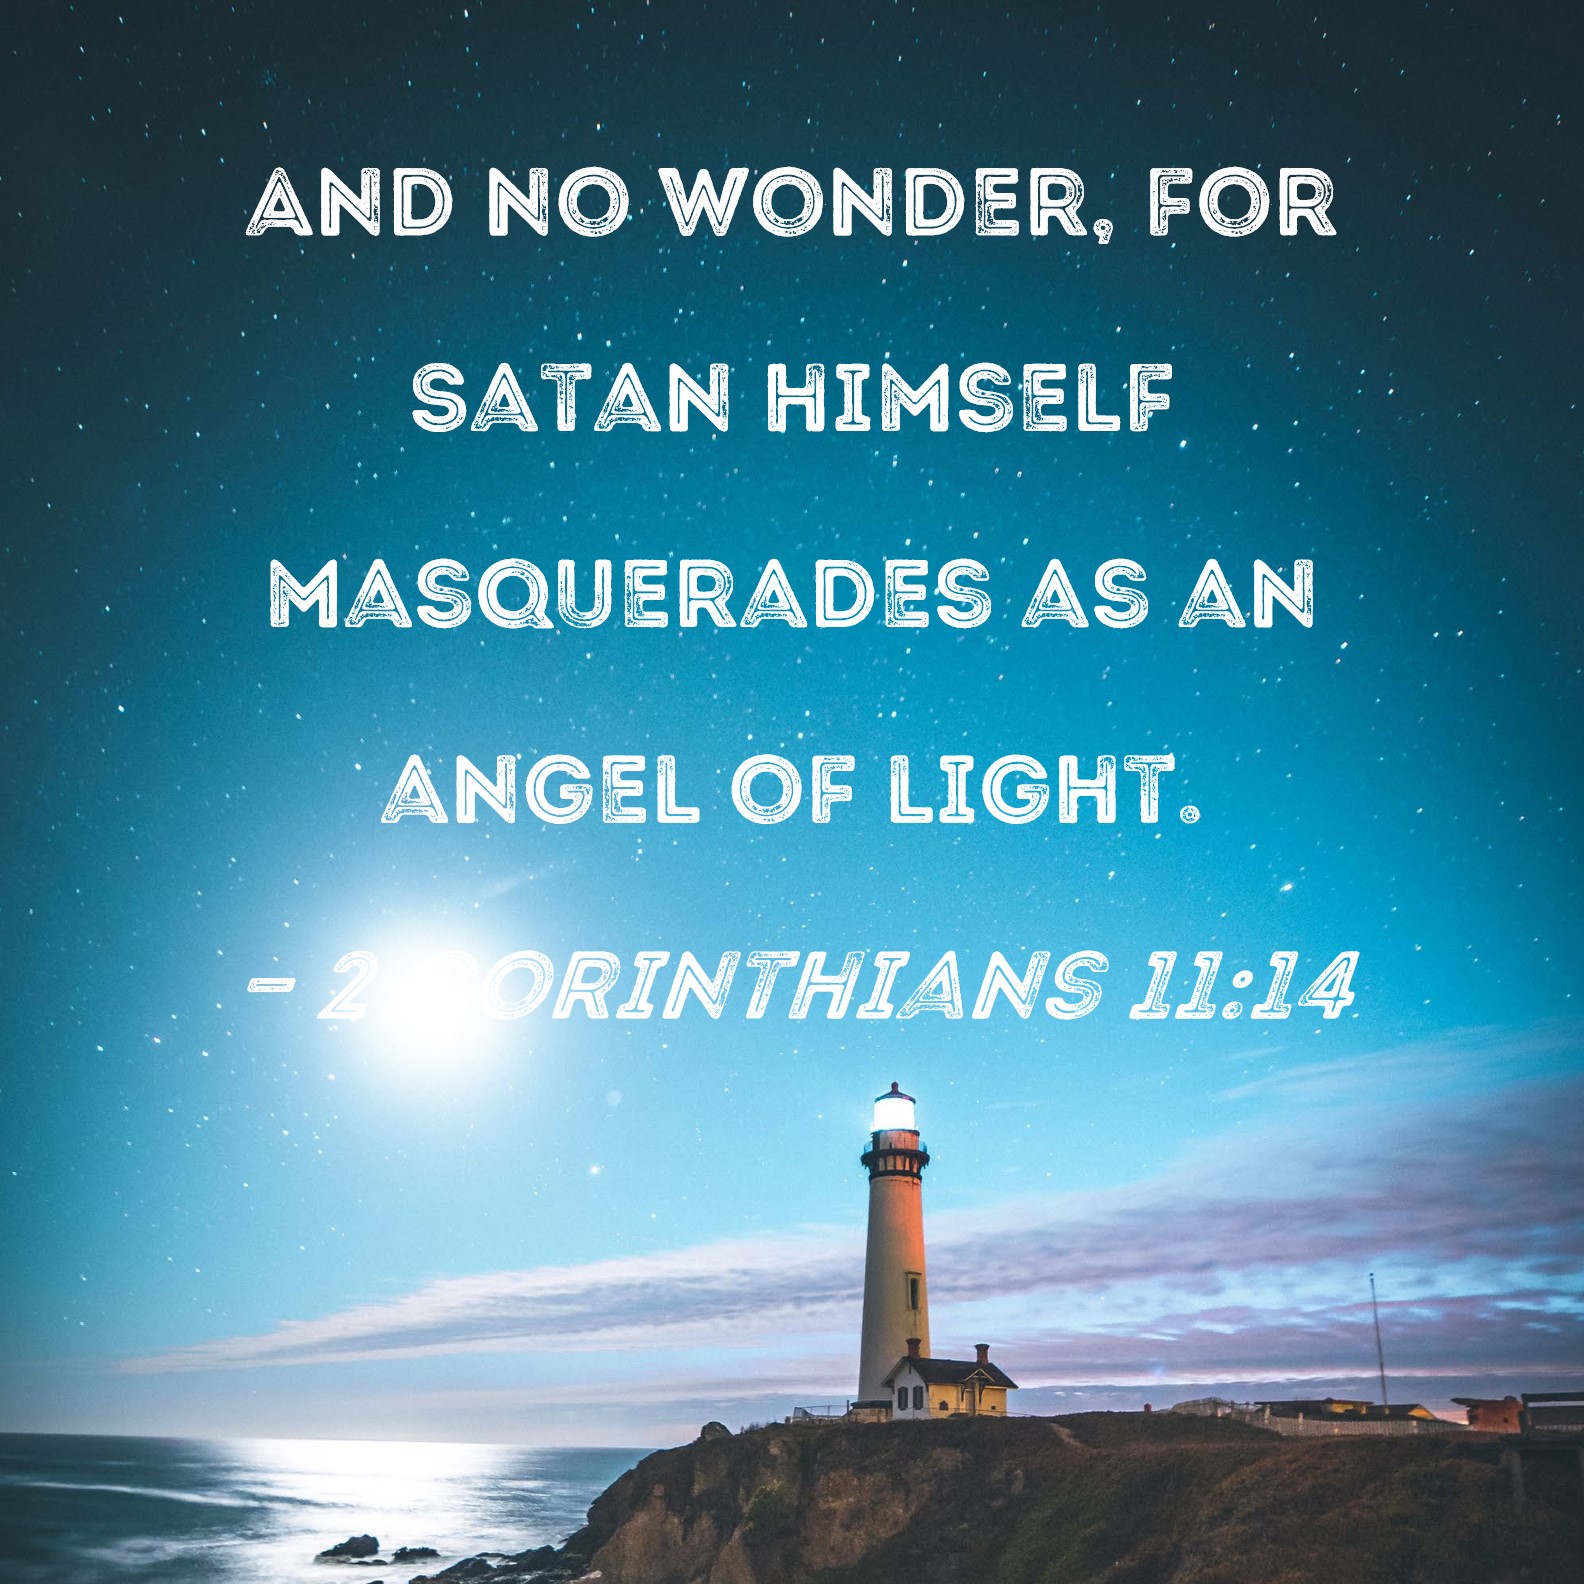 2 Corinthians 11:14 And no wonder, for Satan himself masquerades